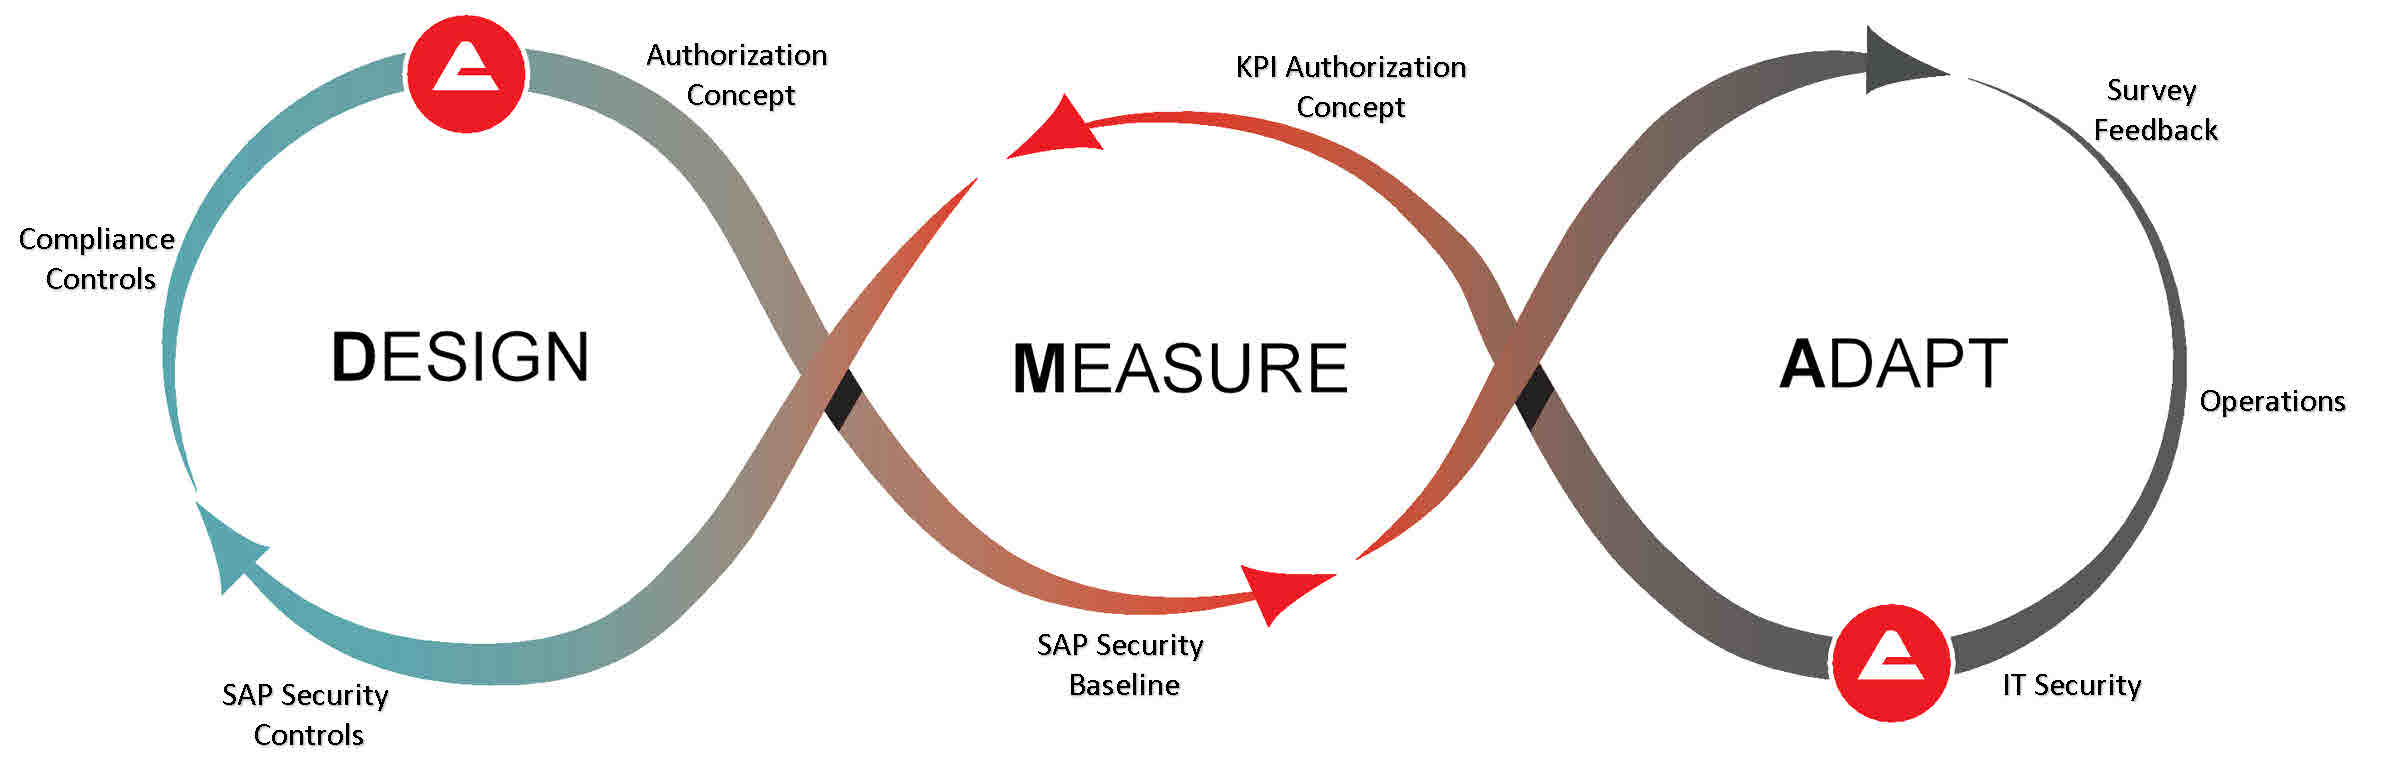 SAP Security DMA